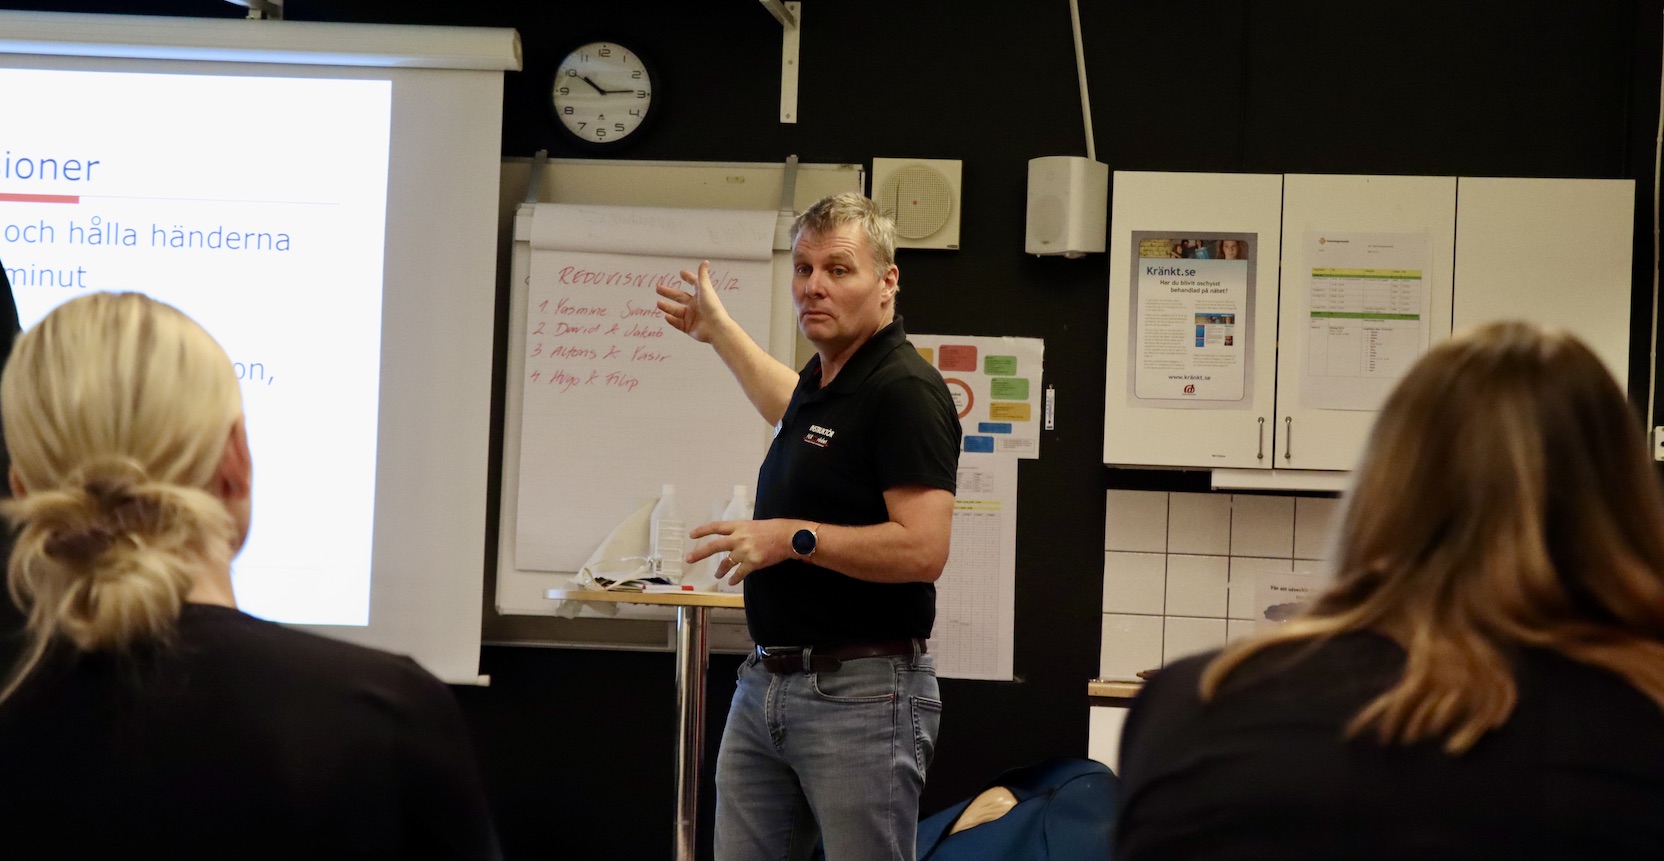 En man i 50-årsåldern står framför en whiteboard-tavla och instruerar elever i en lektionssal. 